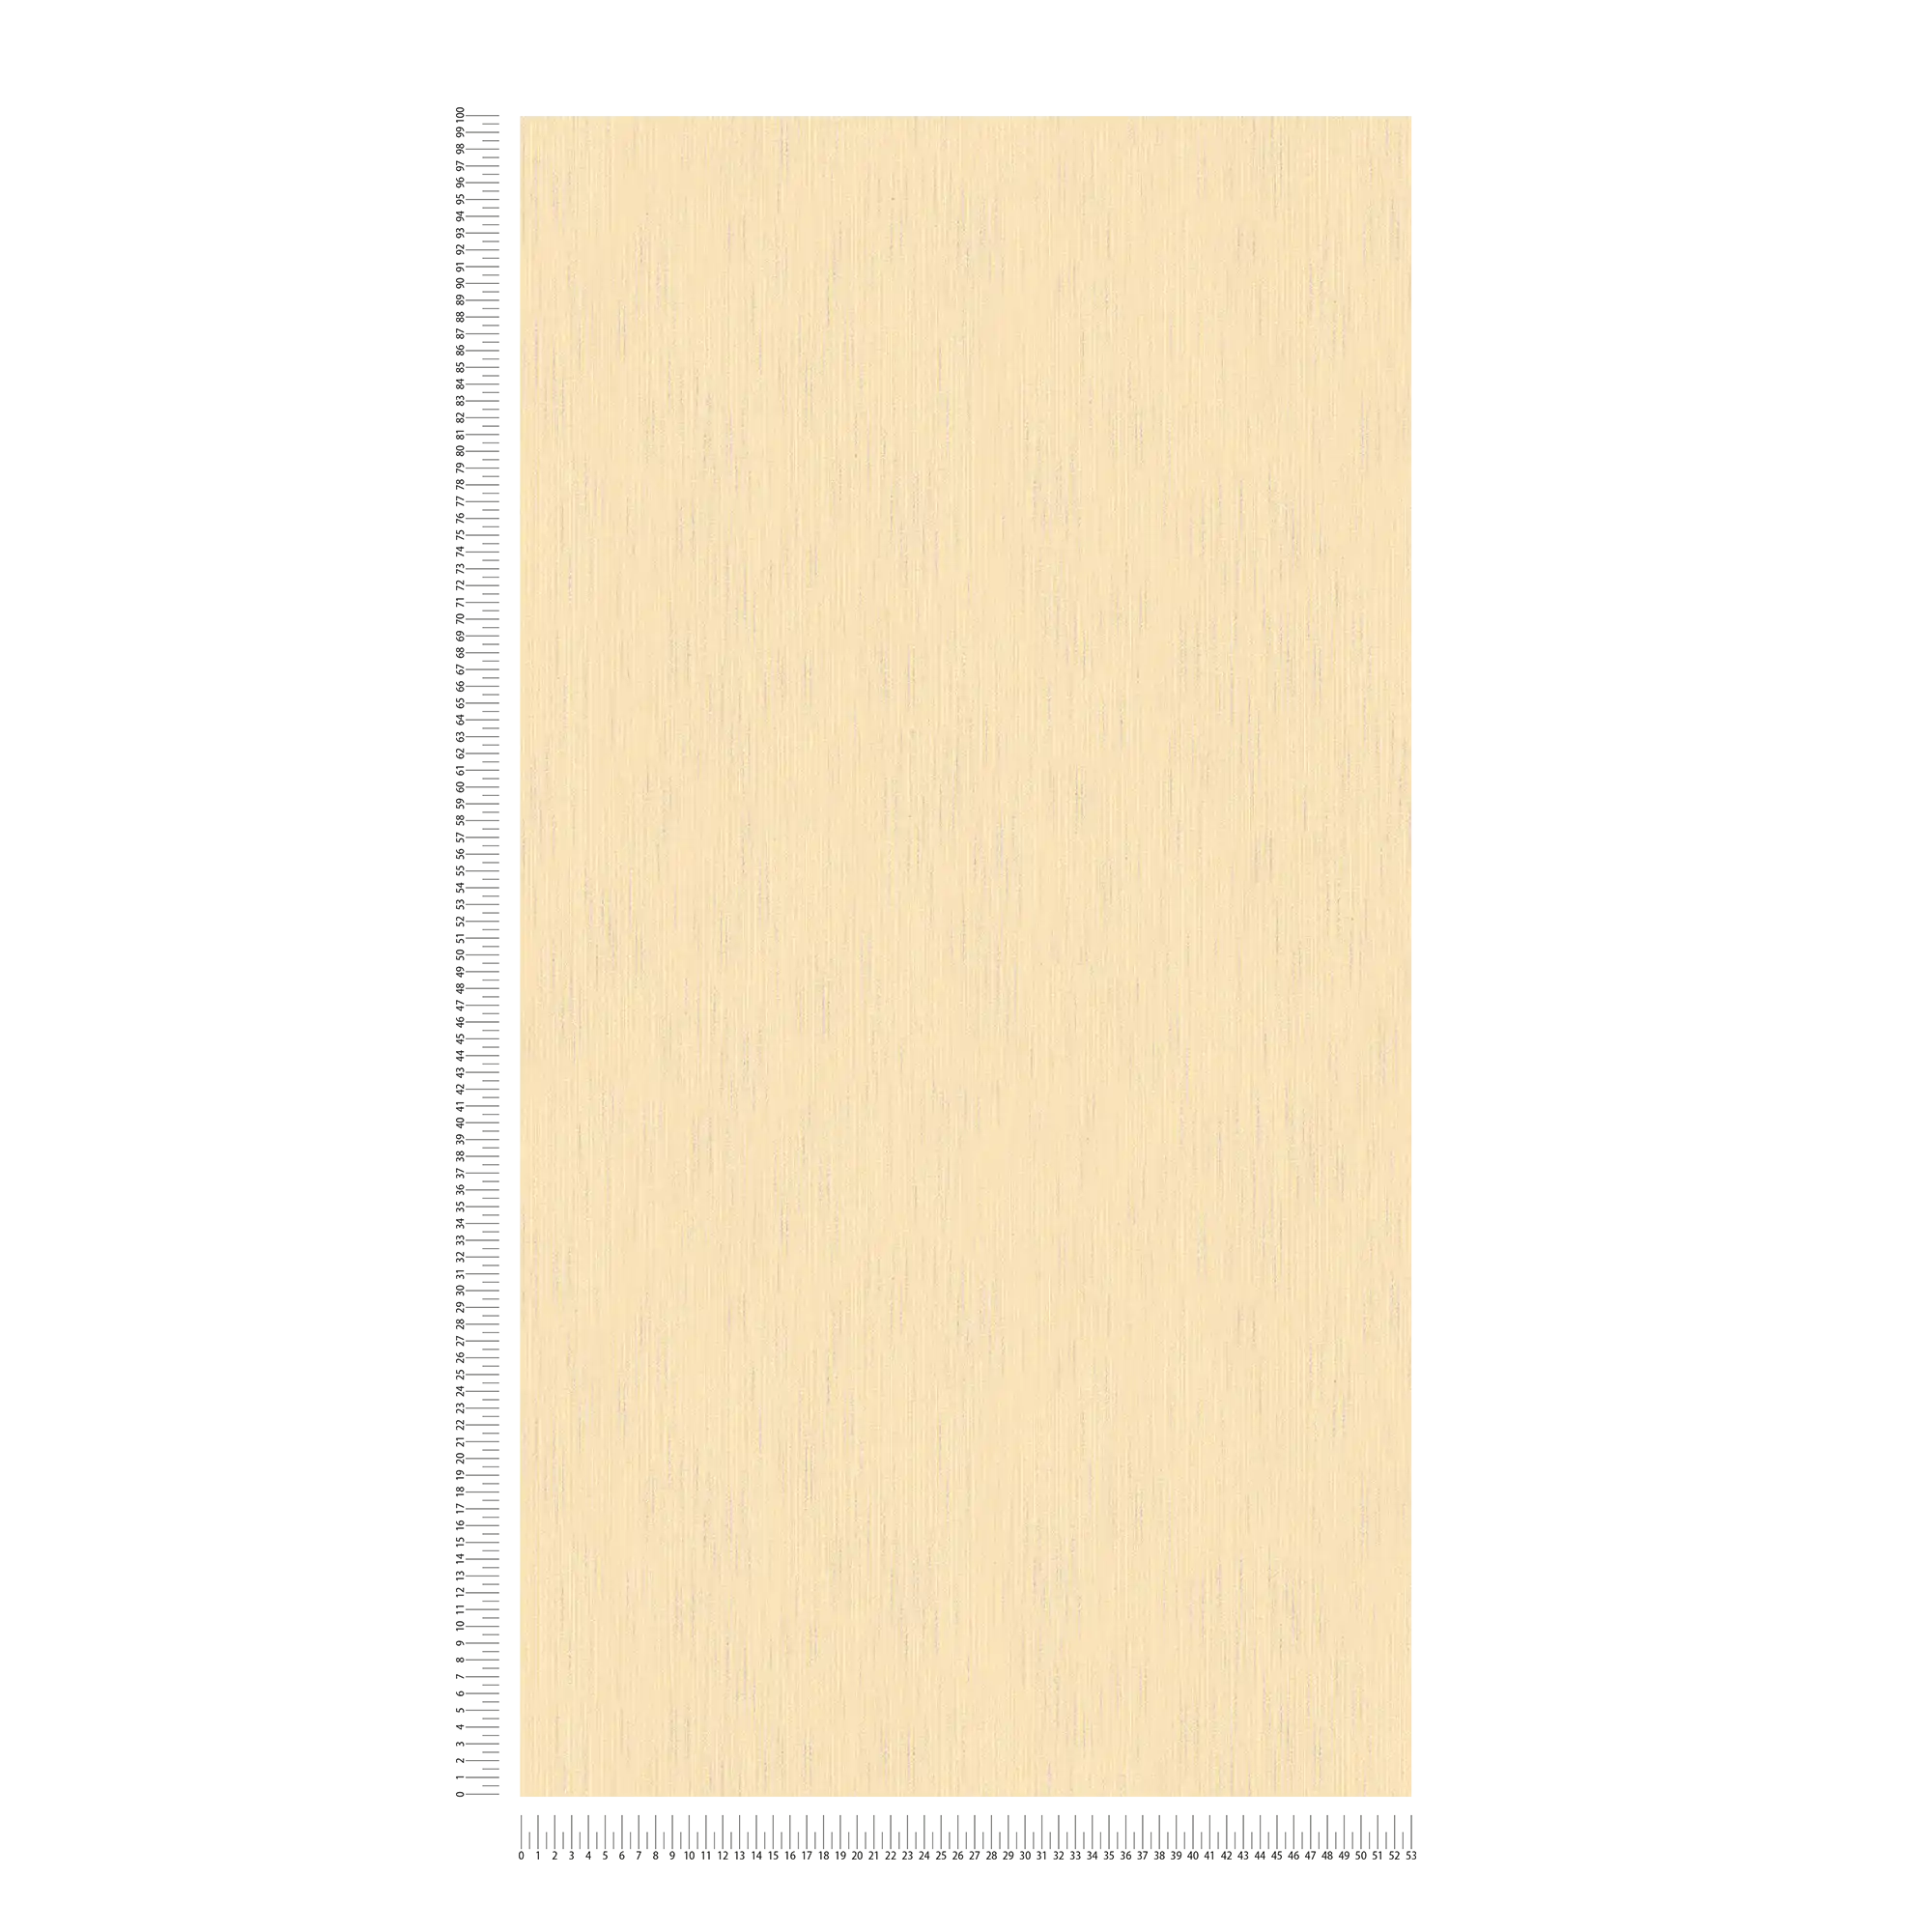             Carta da parati non tessuta a tinta unita color crema con effetto metallizzato e struttura tessile
        